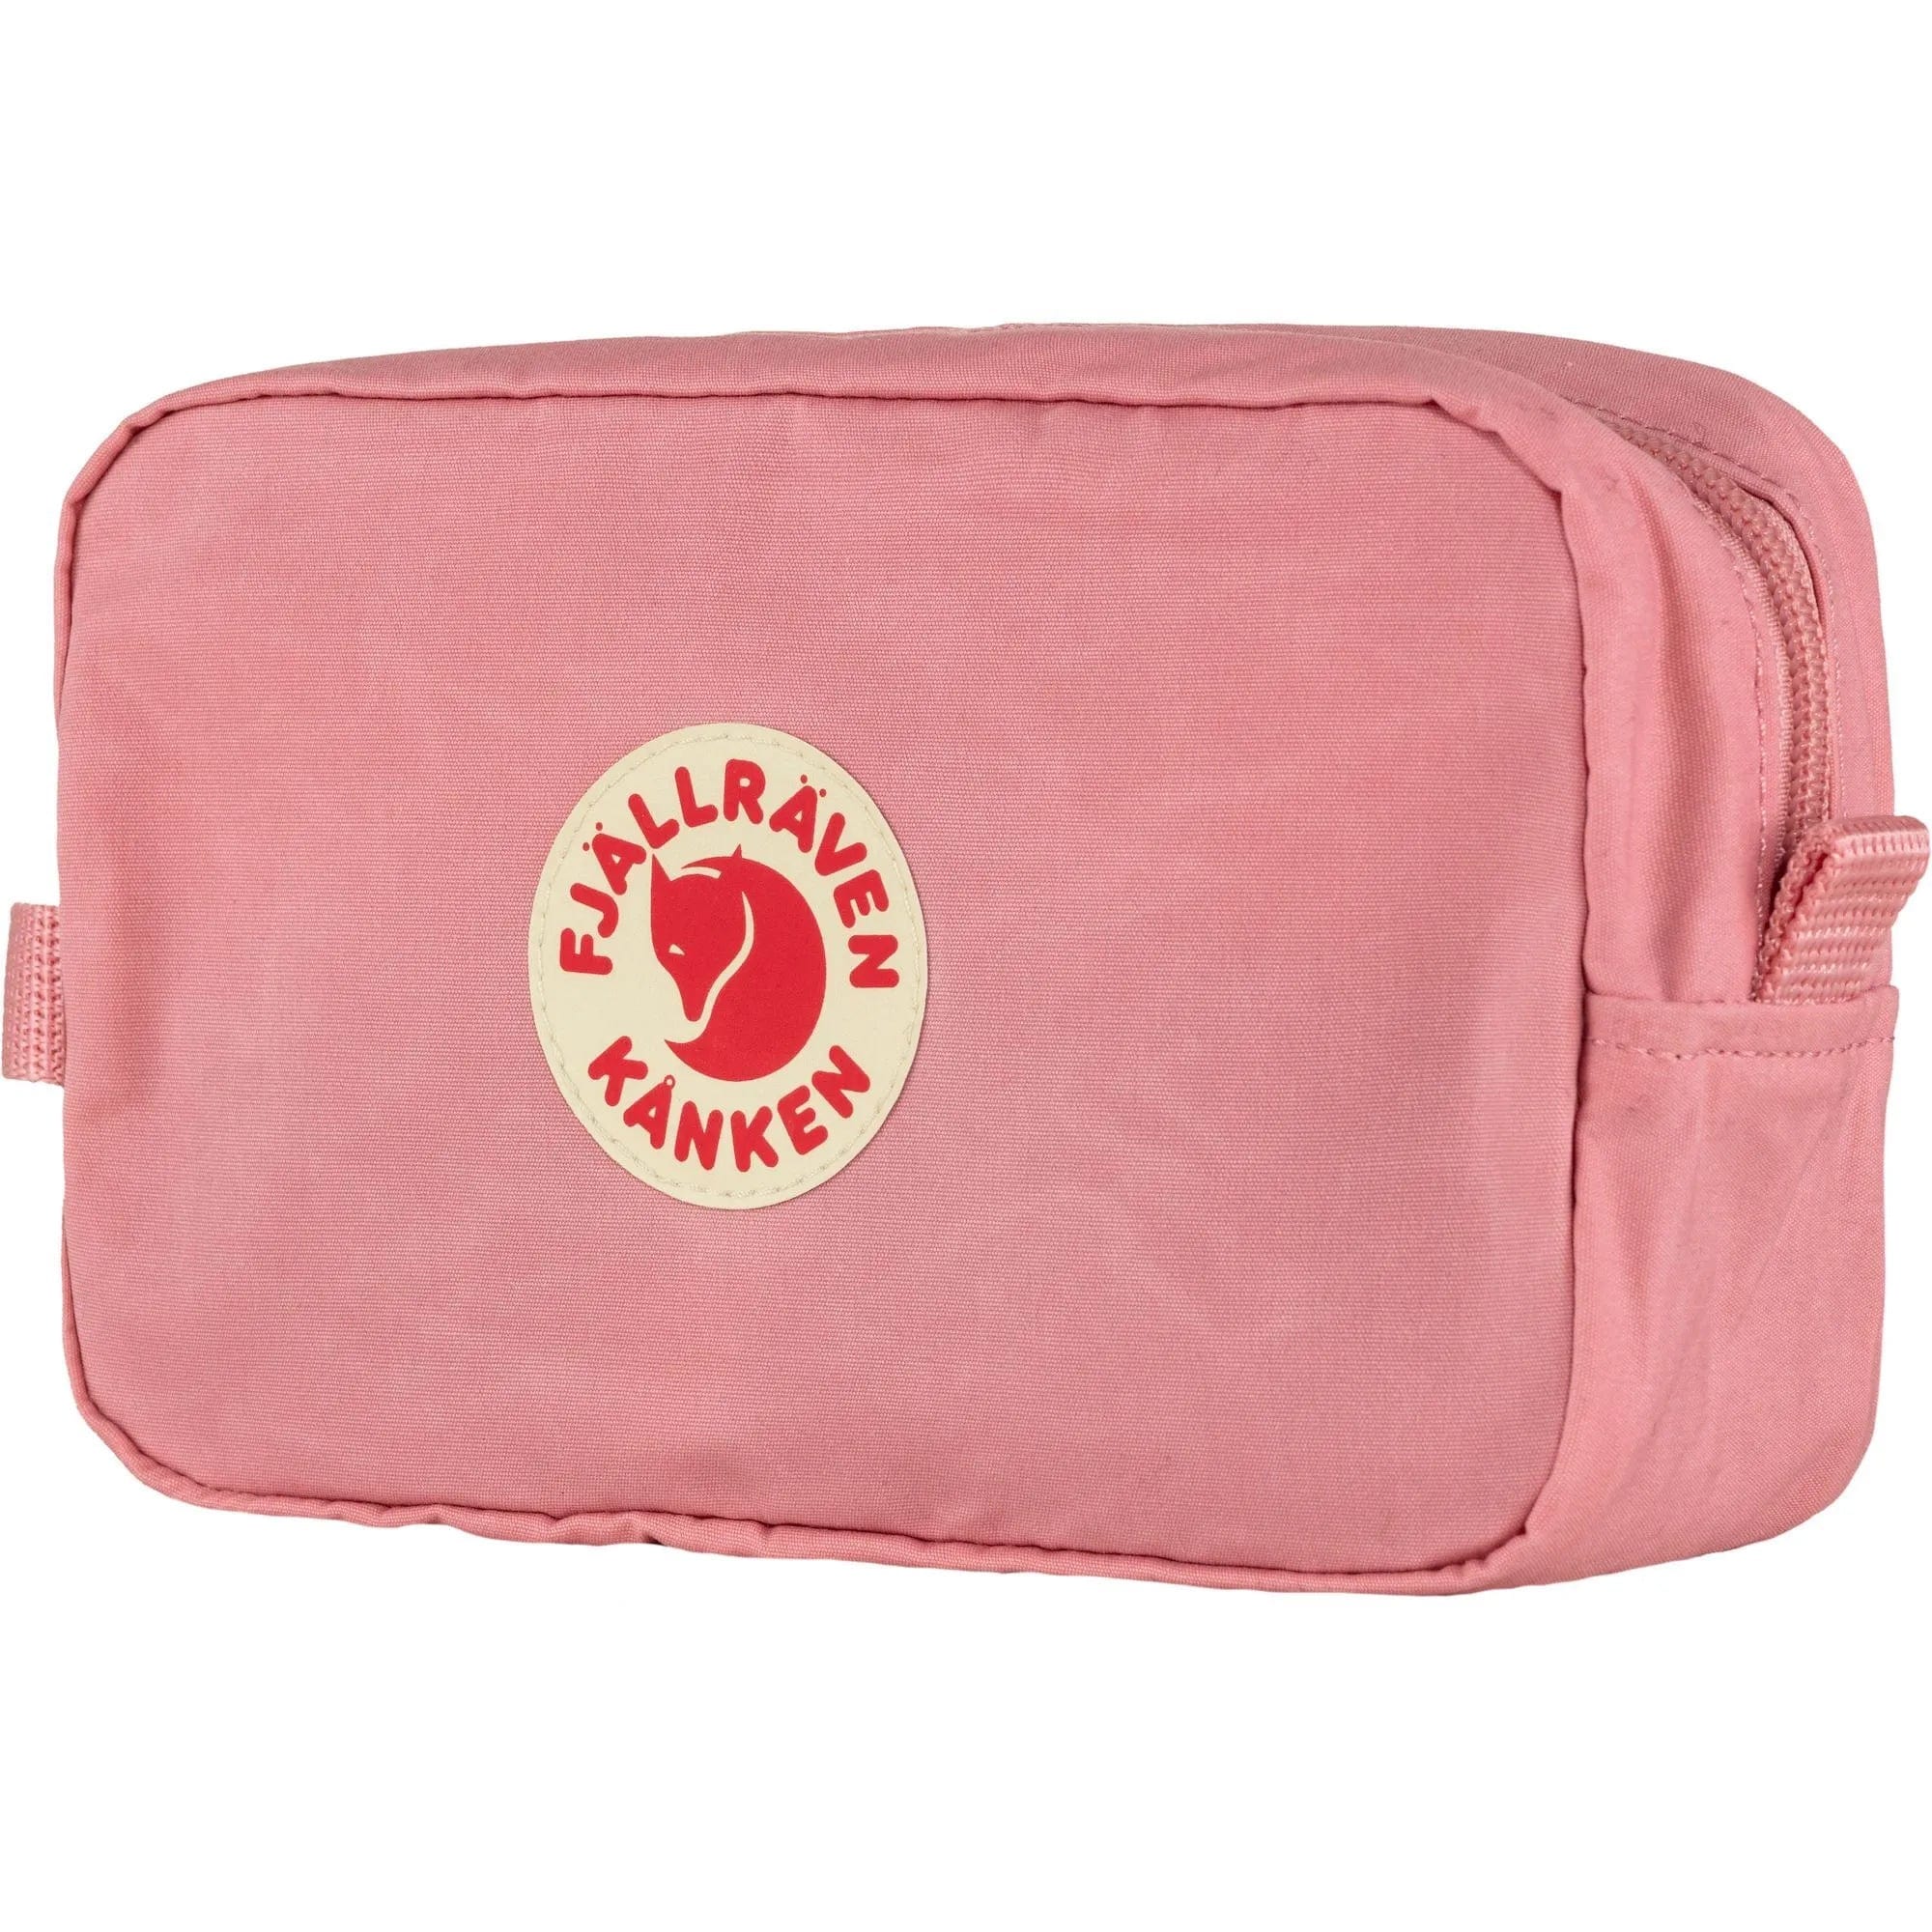 Fjällräven Bags One Size / Pink FJÄLLRÄVEN - Kånken Gear Bag